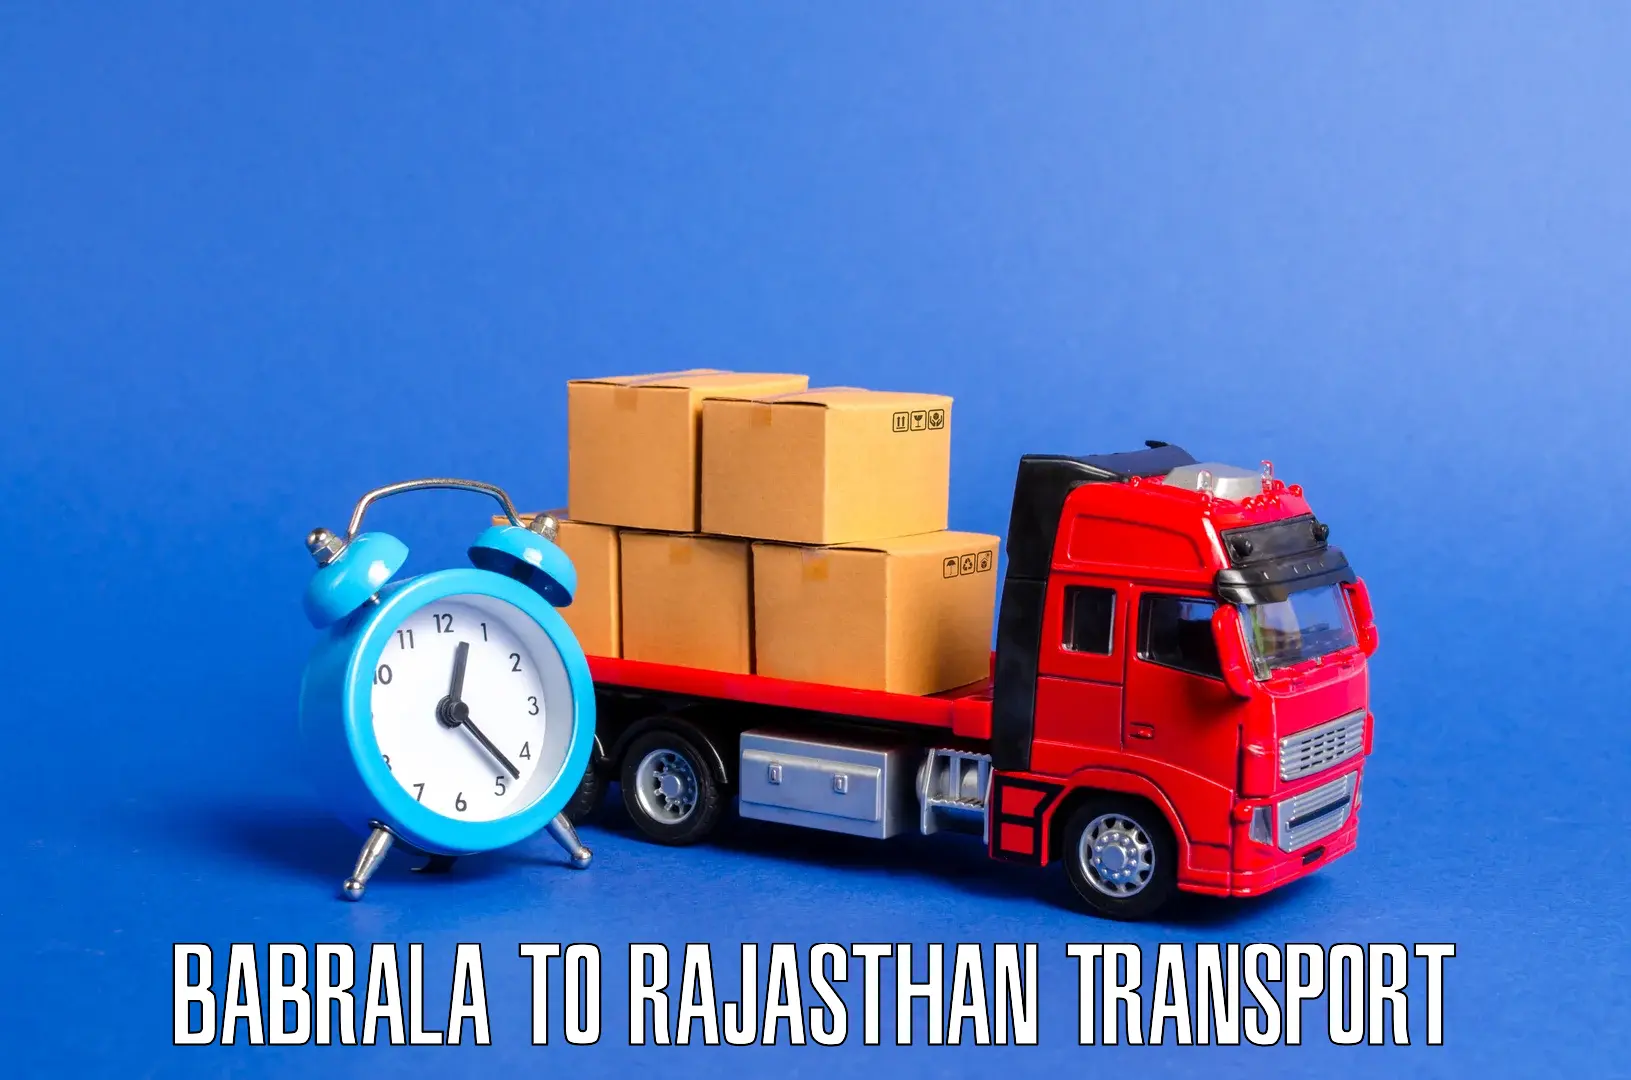 Air cargo transport services Babrala to Deshnok